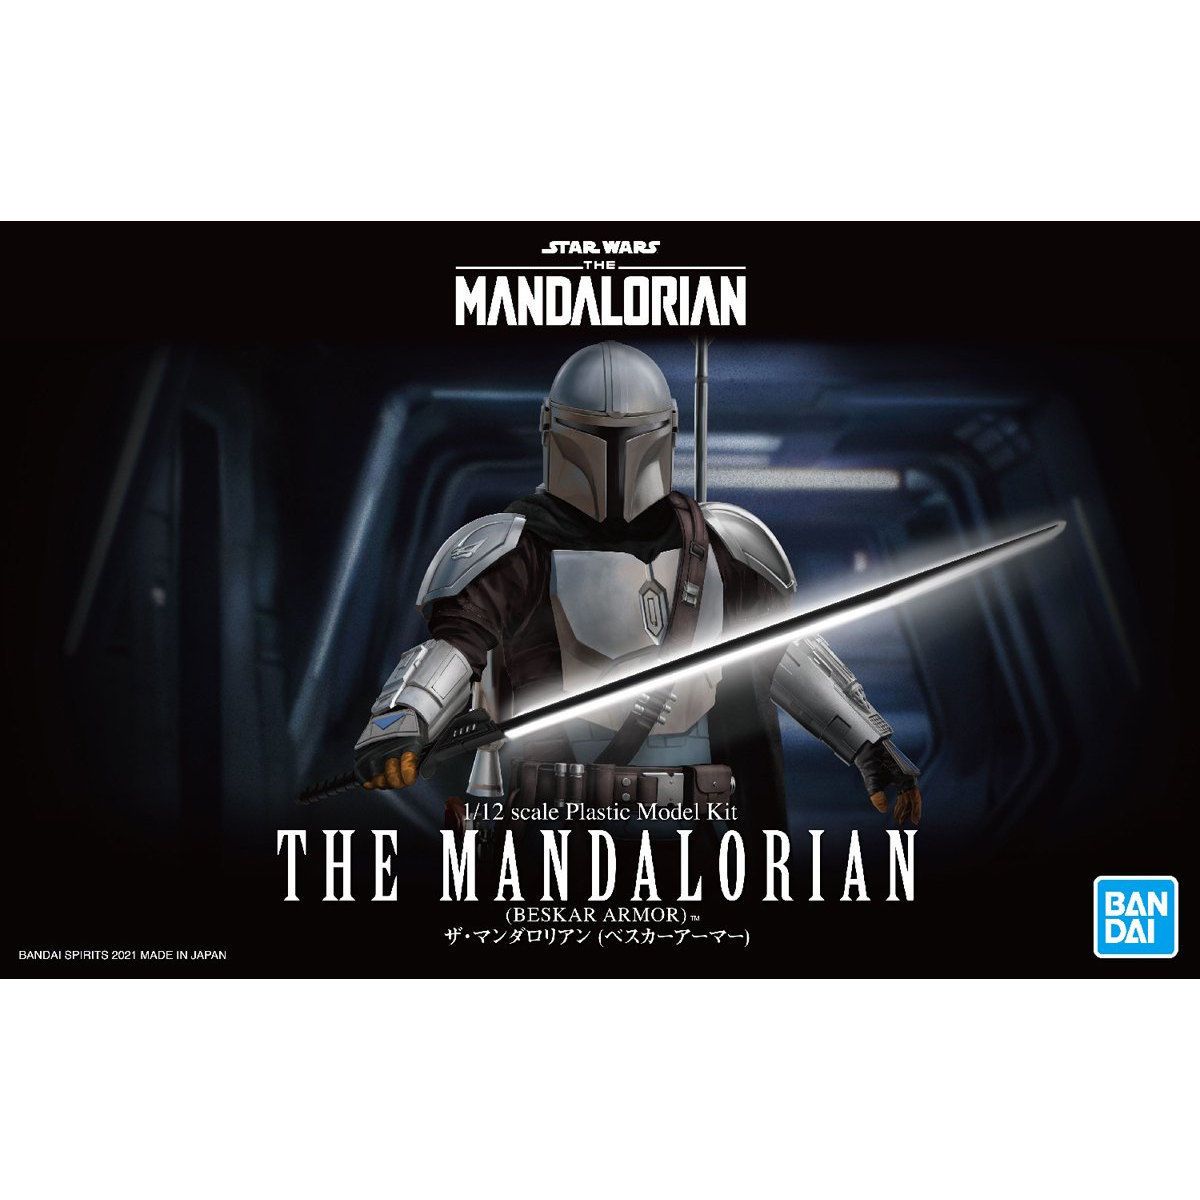 Bandai 1/12 Scale Star Wars The Mandalorian (Beskar Armor) Model